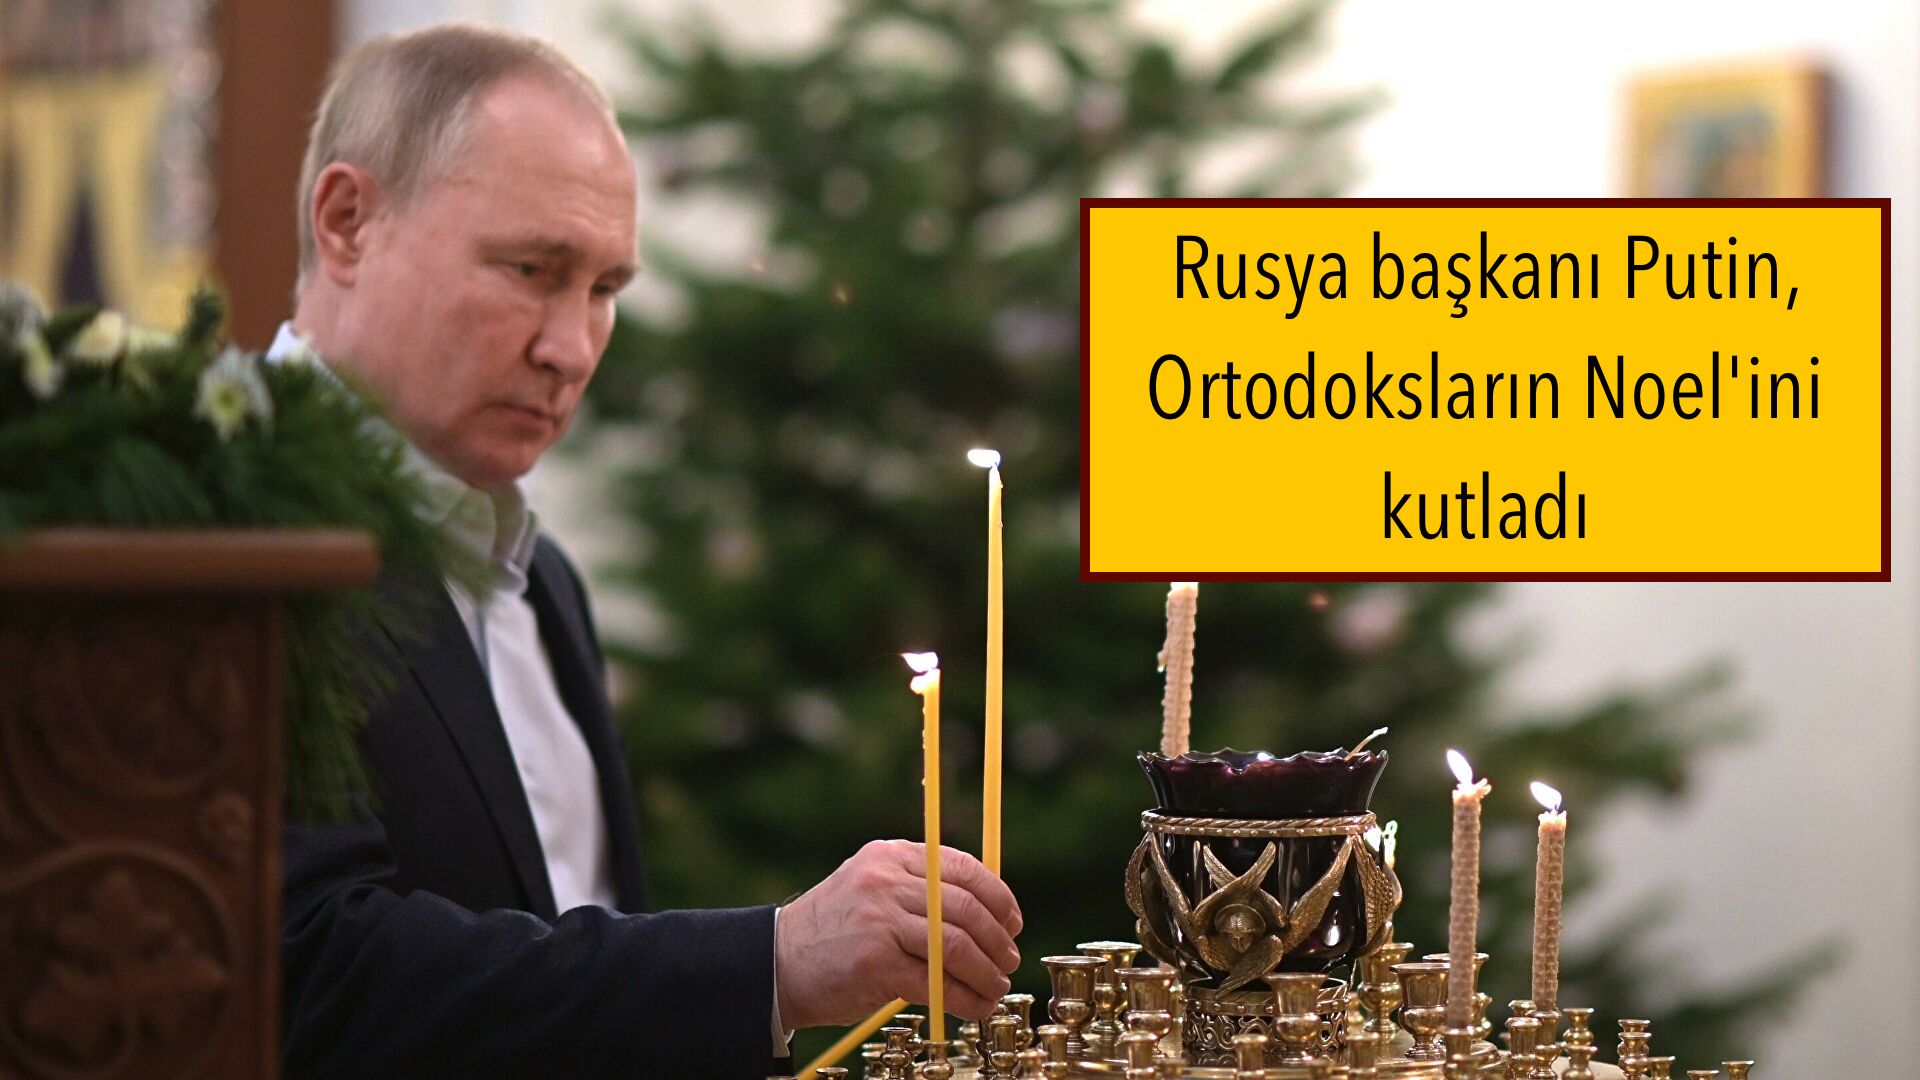 Rusya başkanı Putin, Ortodoksların Noel’ini kutladı